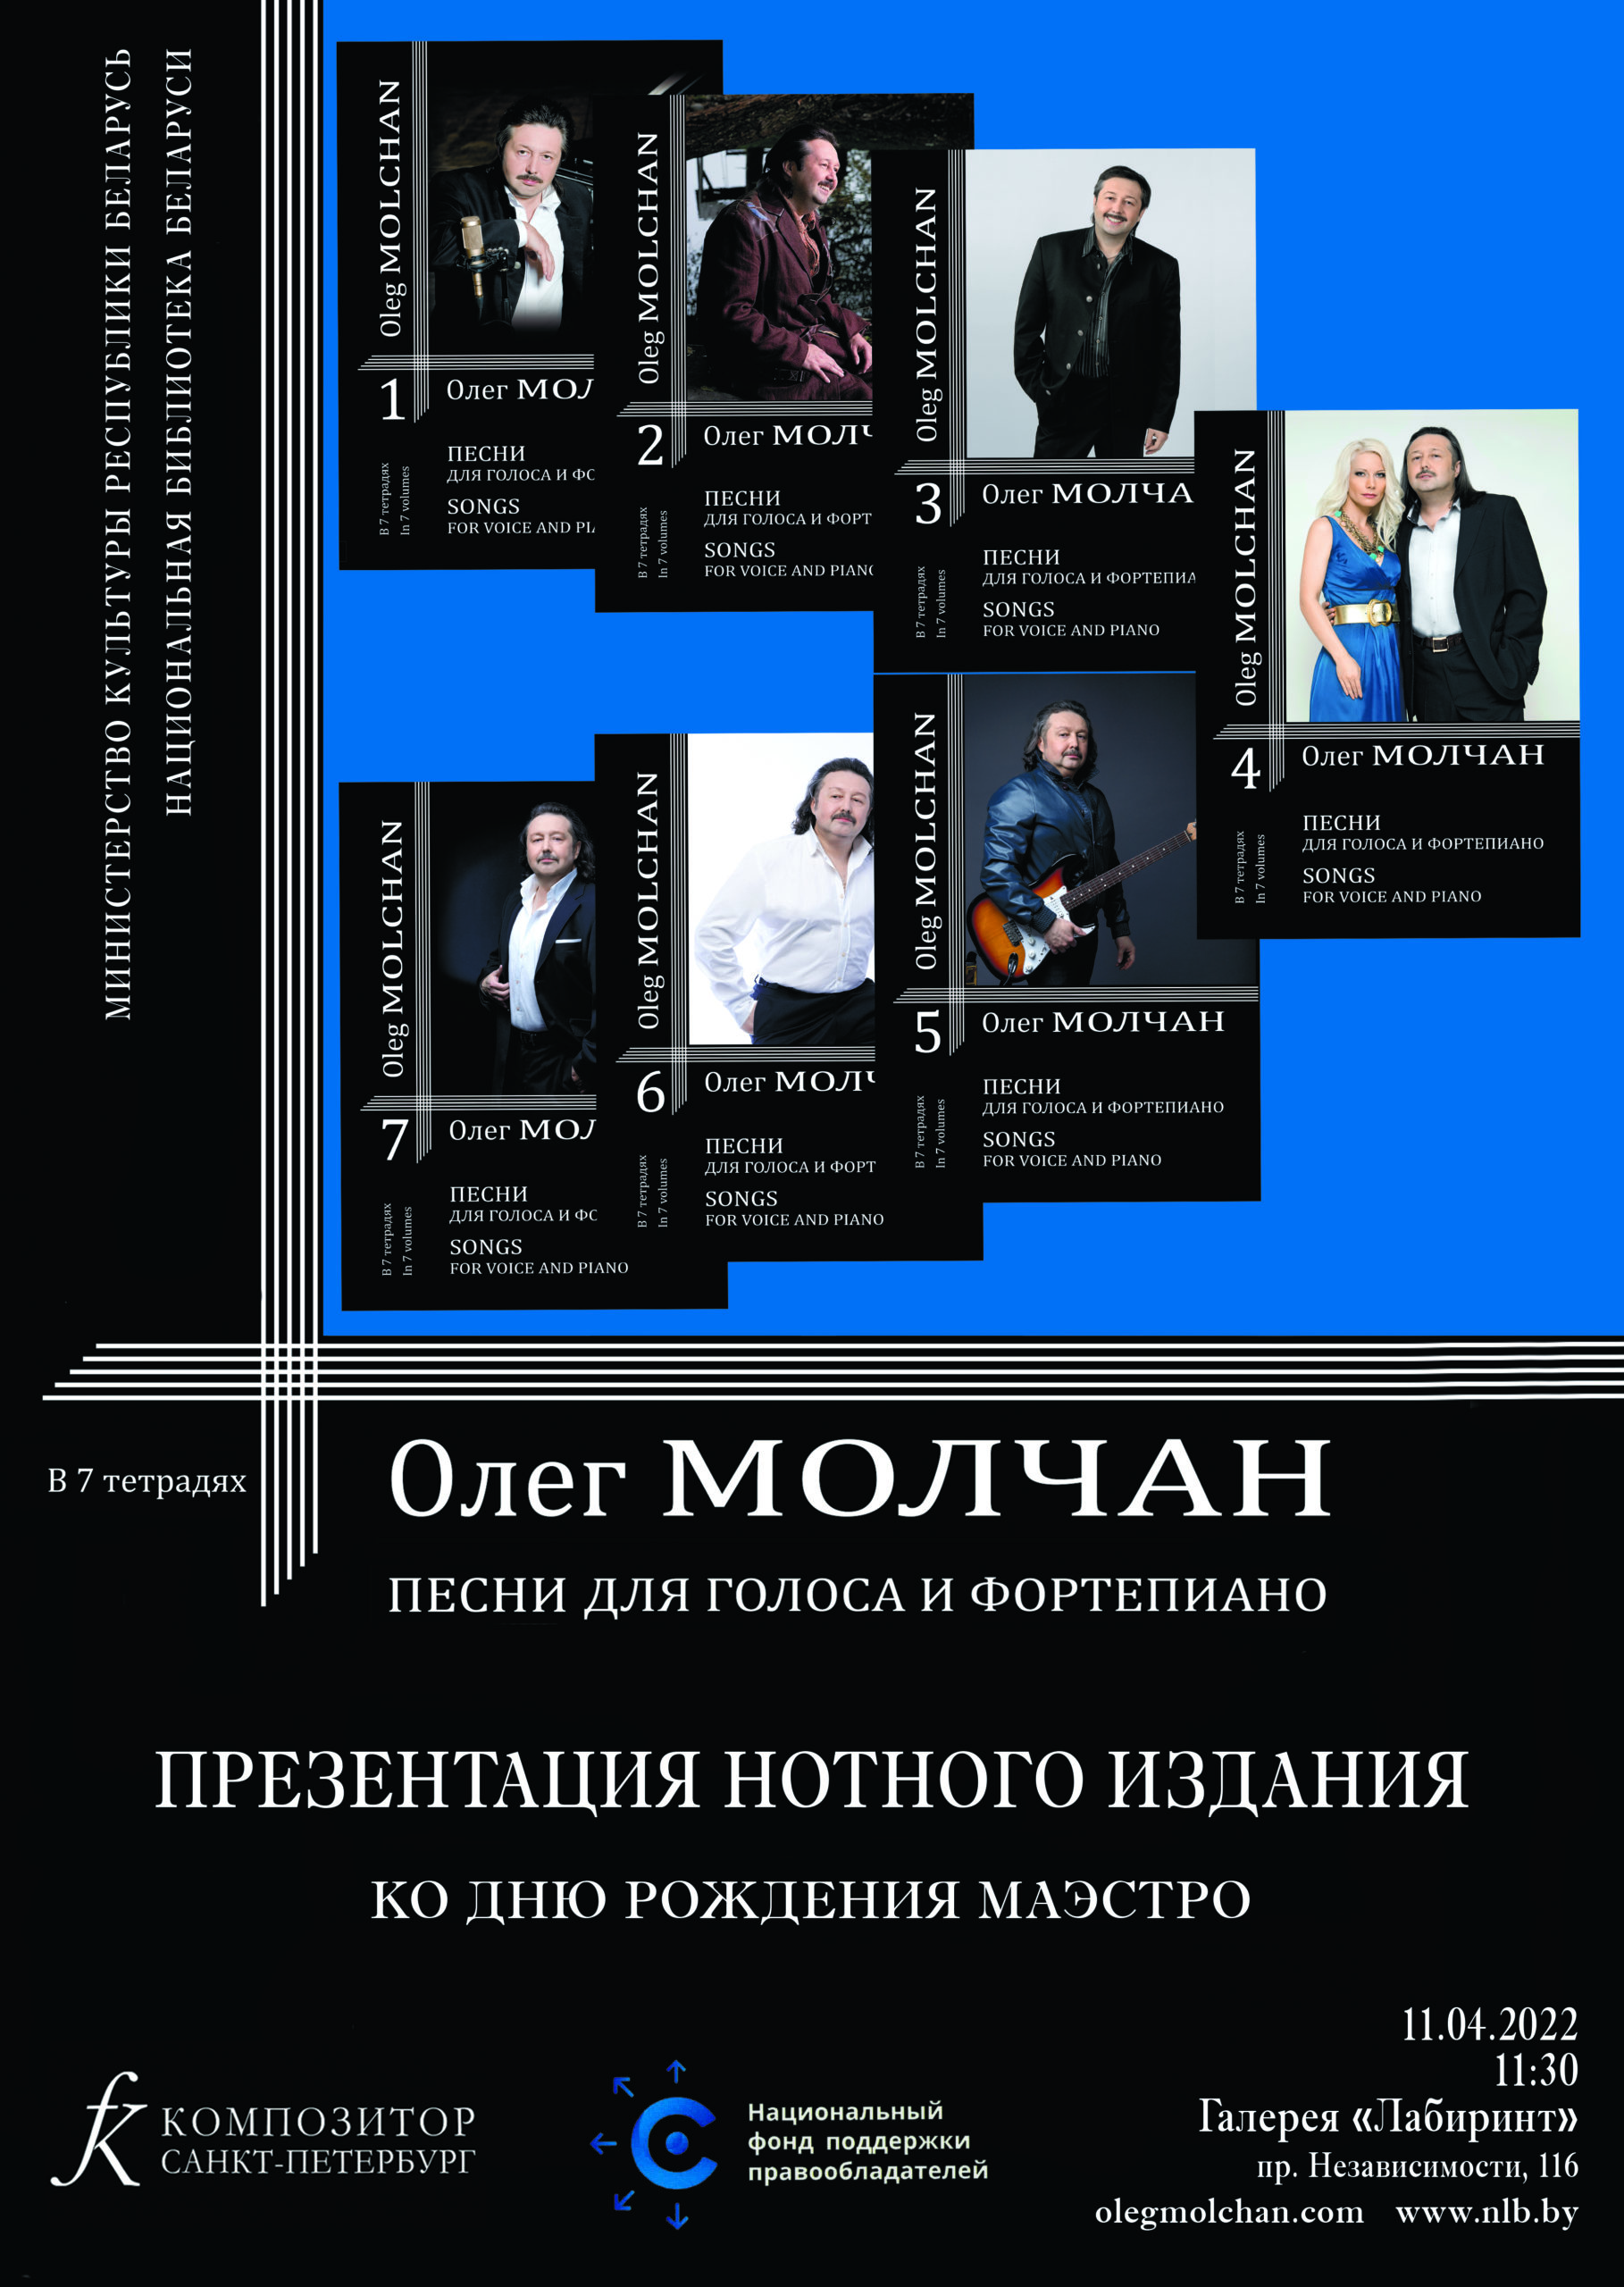 В день рождения композитора Олега Молчана в Беларуси состоится презентация нотного издания с его песнями